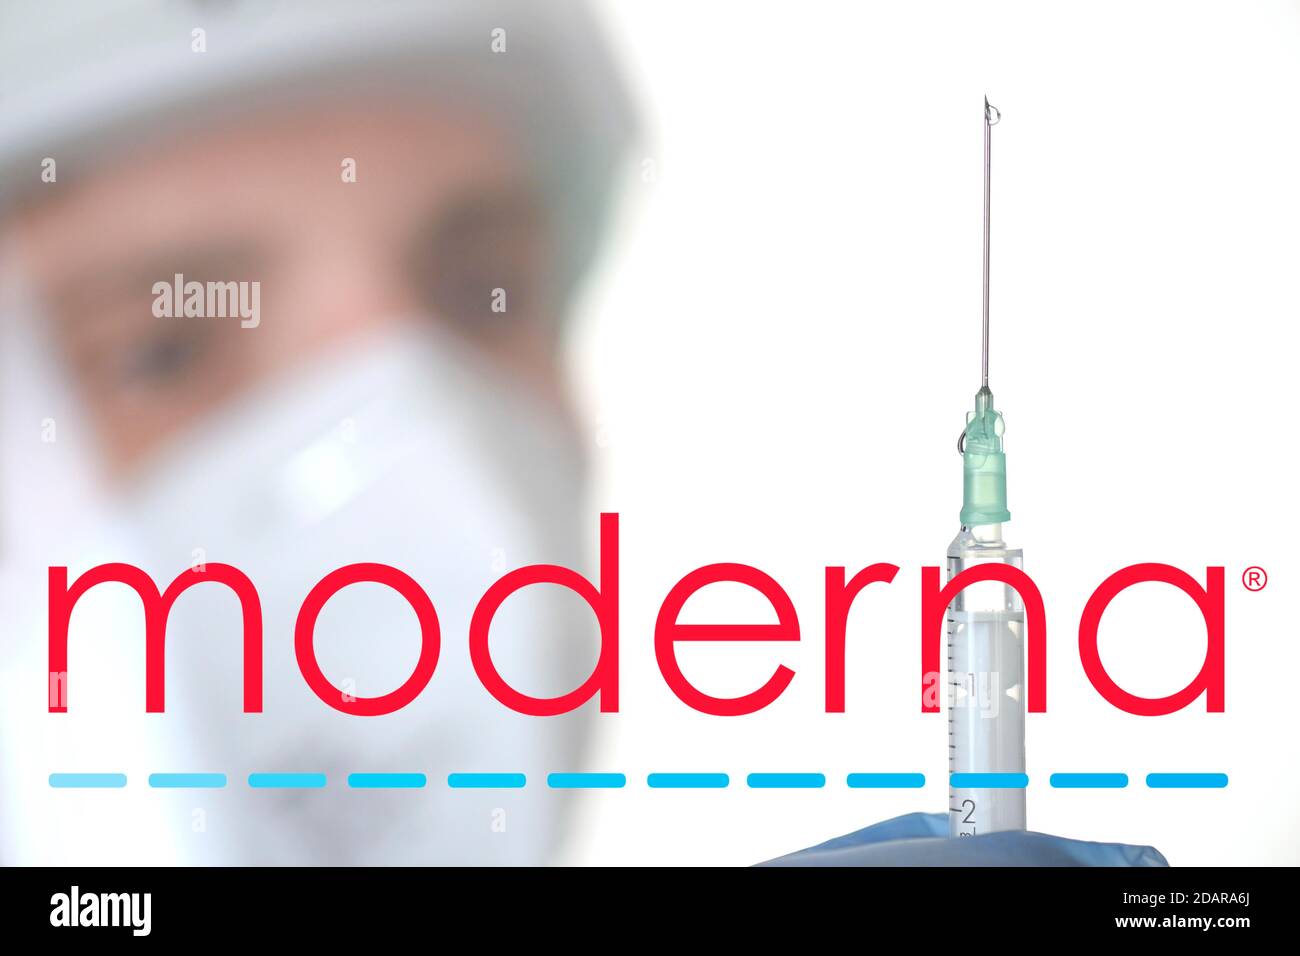 Image symbole vaccin Corona de la société MODERNA, homme avec seringue, crise corona, Bade-Wurtemberg, Allemagne Banque D'Images